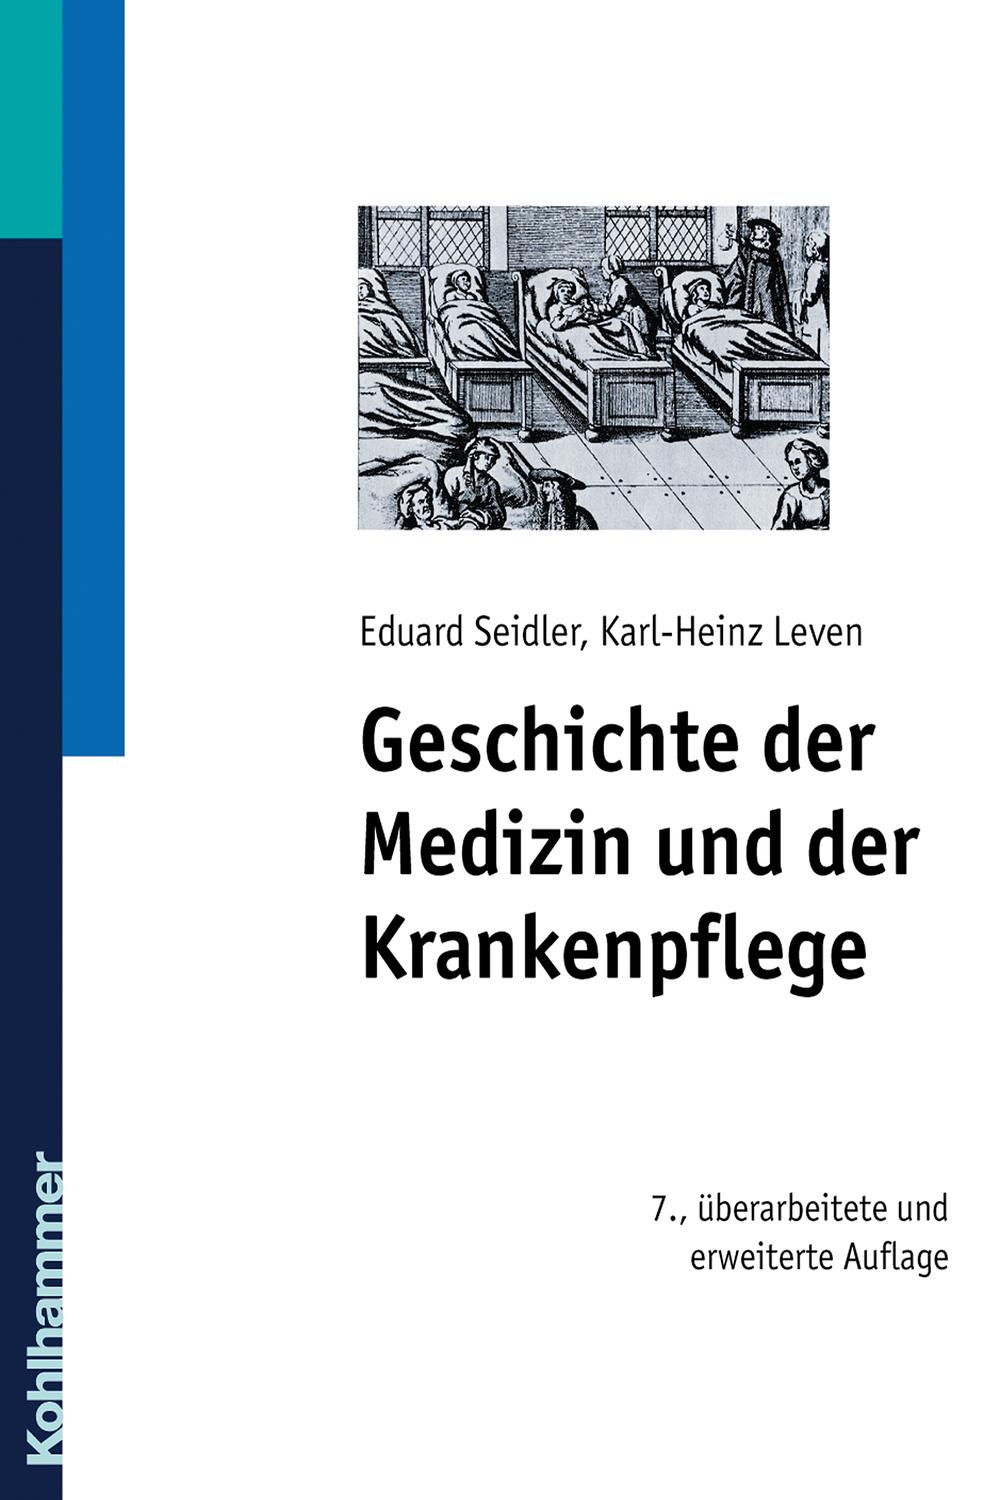 Geschichte der Medizin und der Krankenpflege - Eduard Seidler, Karl-Heinz Leven